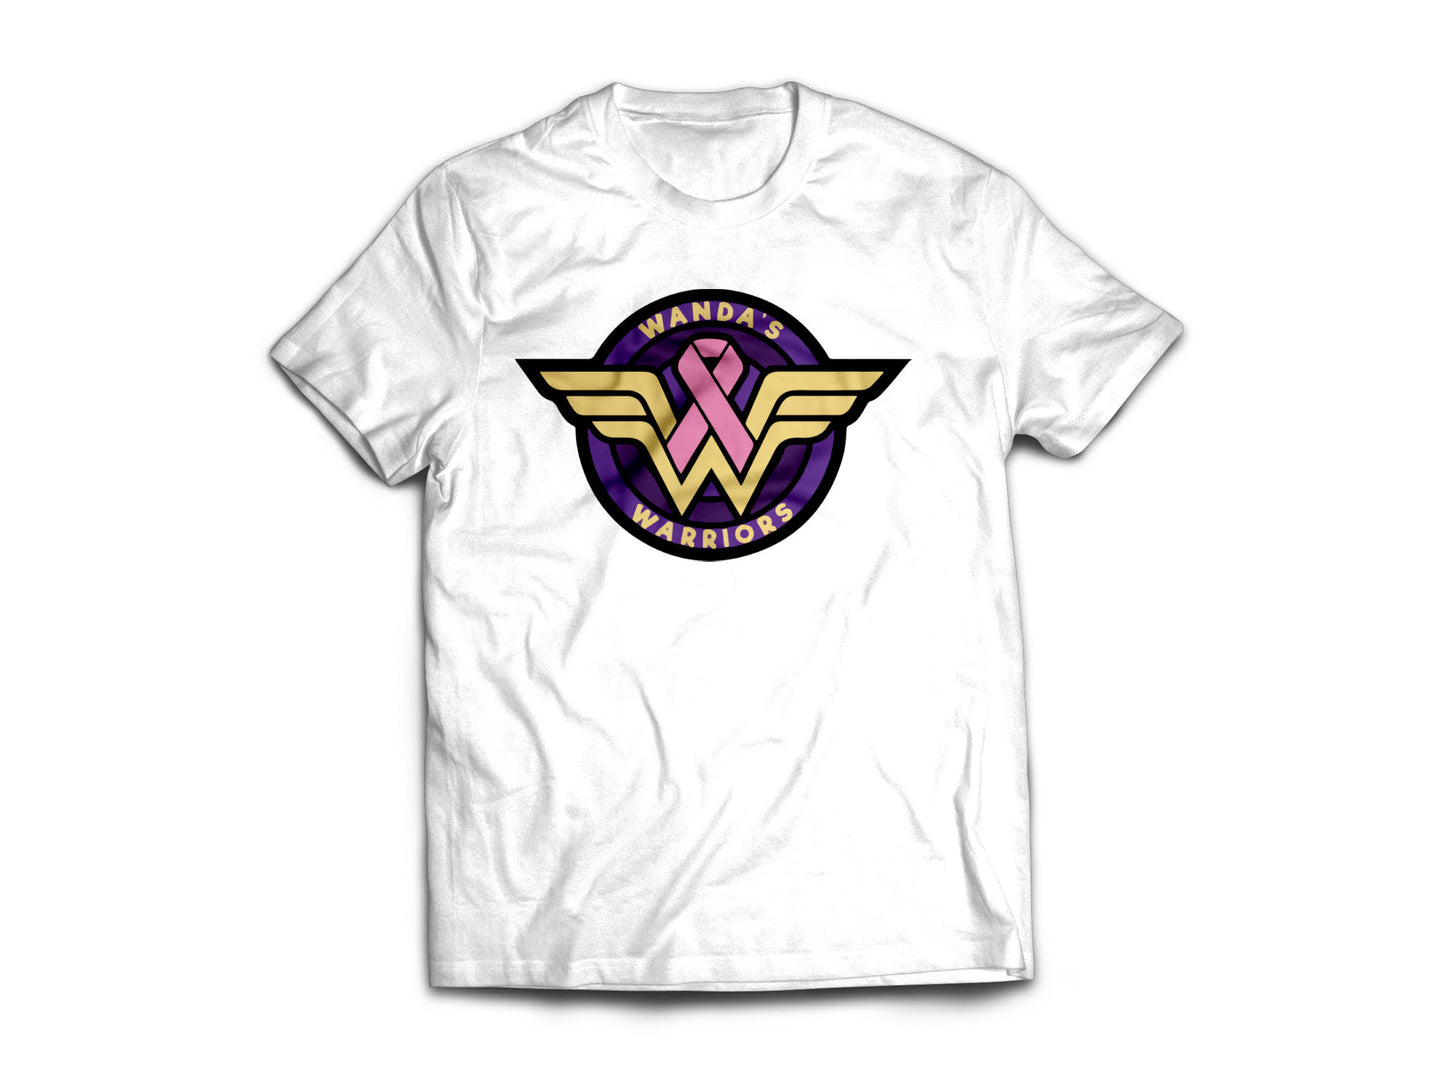 Wanda's Warriors - White Tee